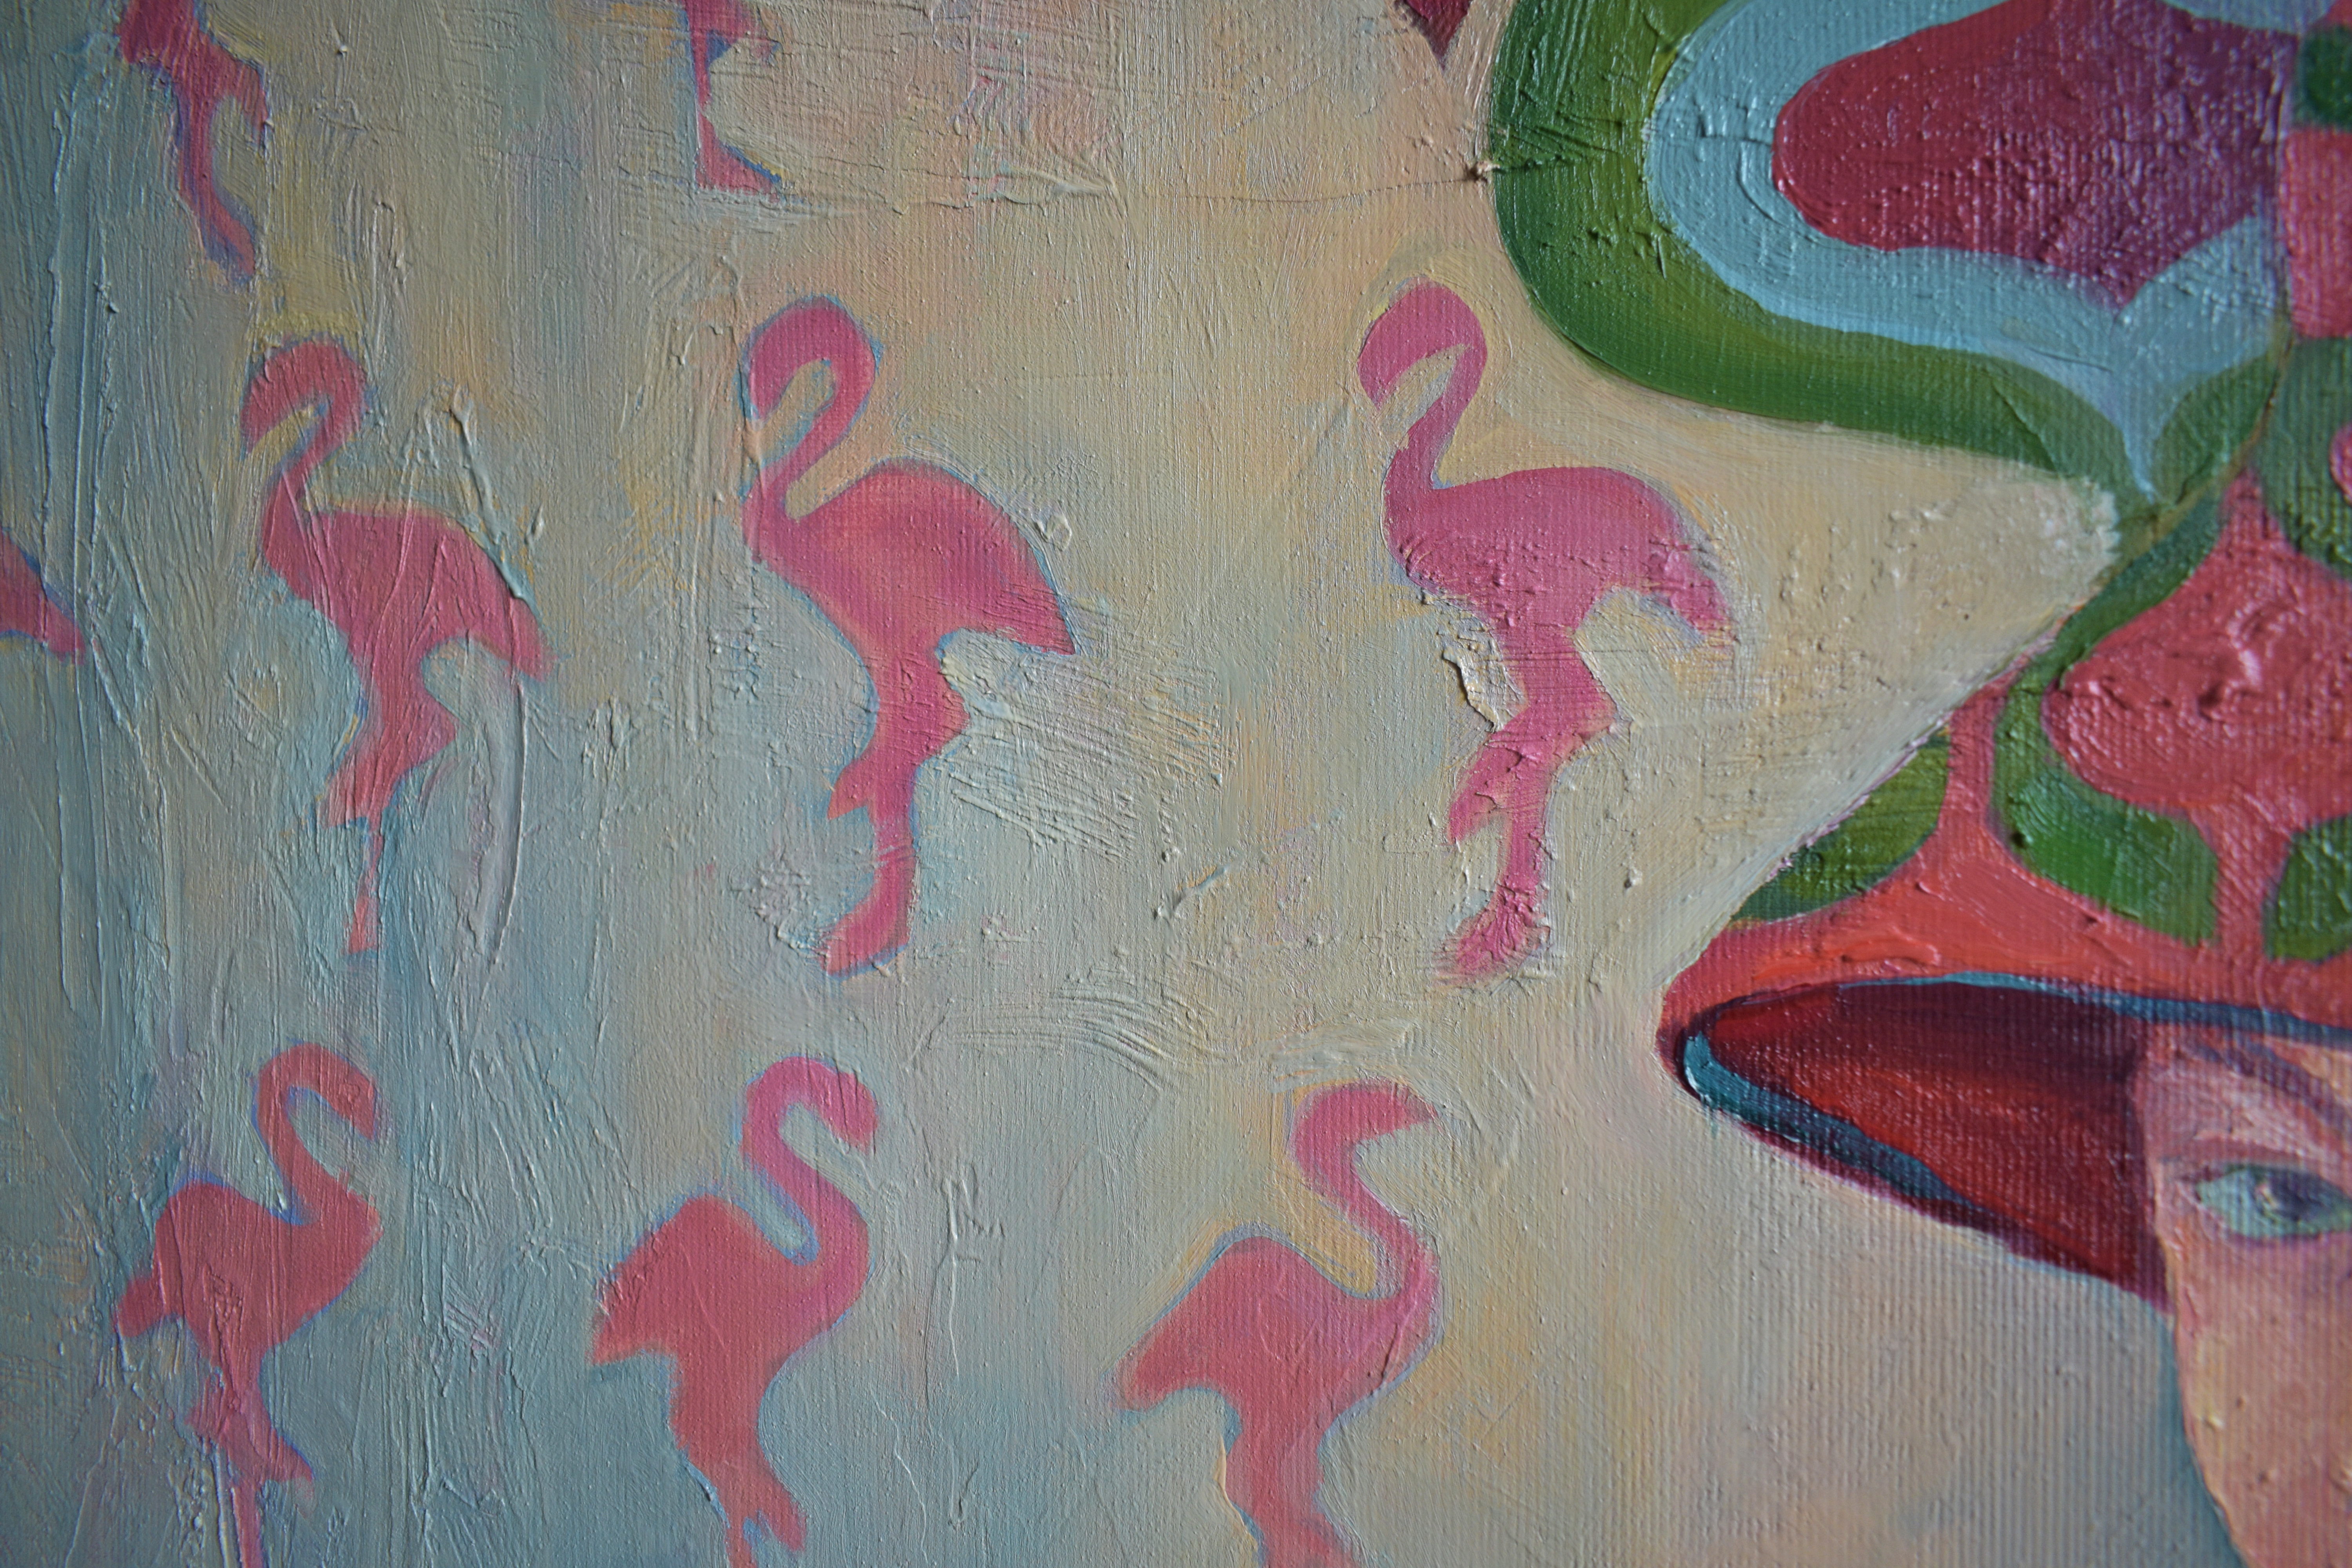 Painting by Marina Venediktova Flamingo vacation detail